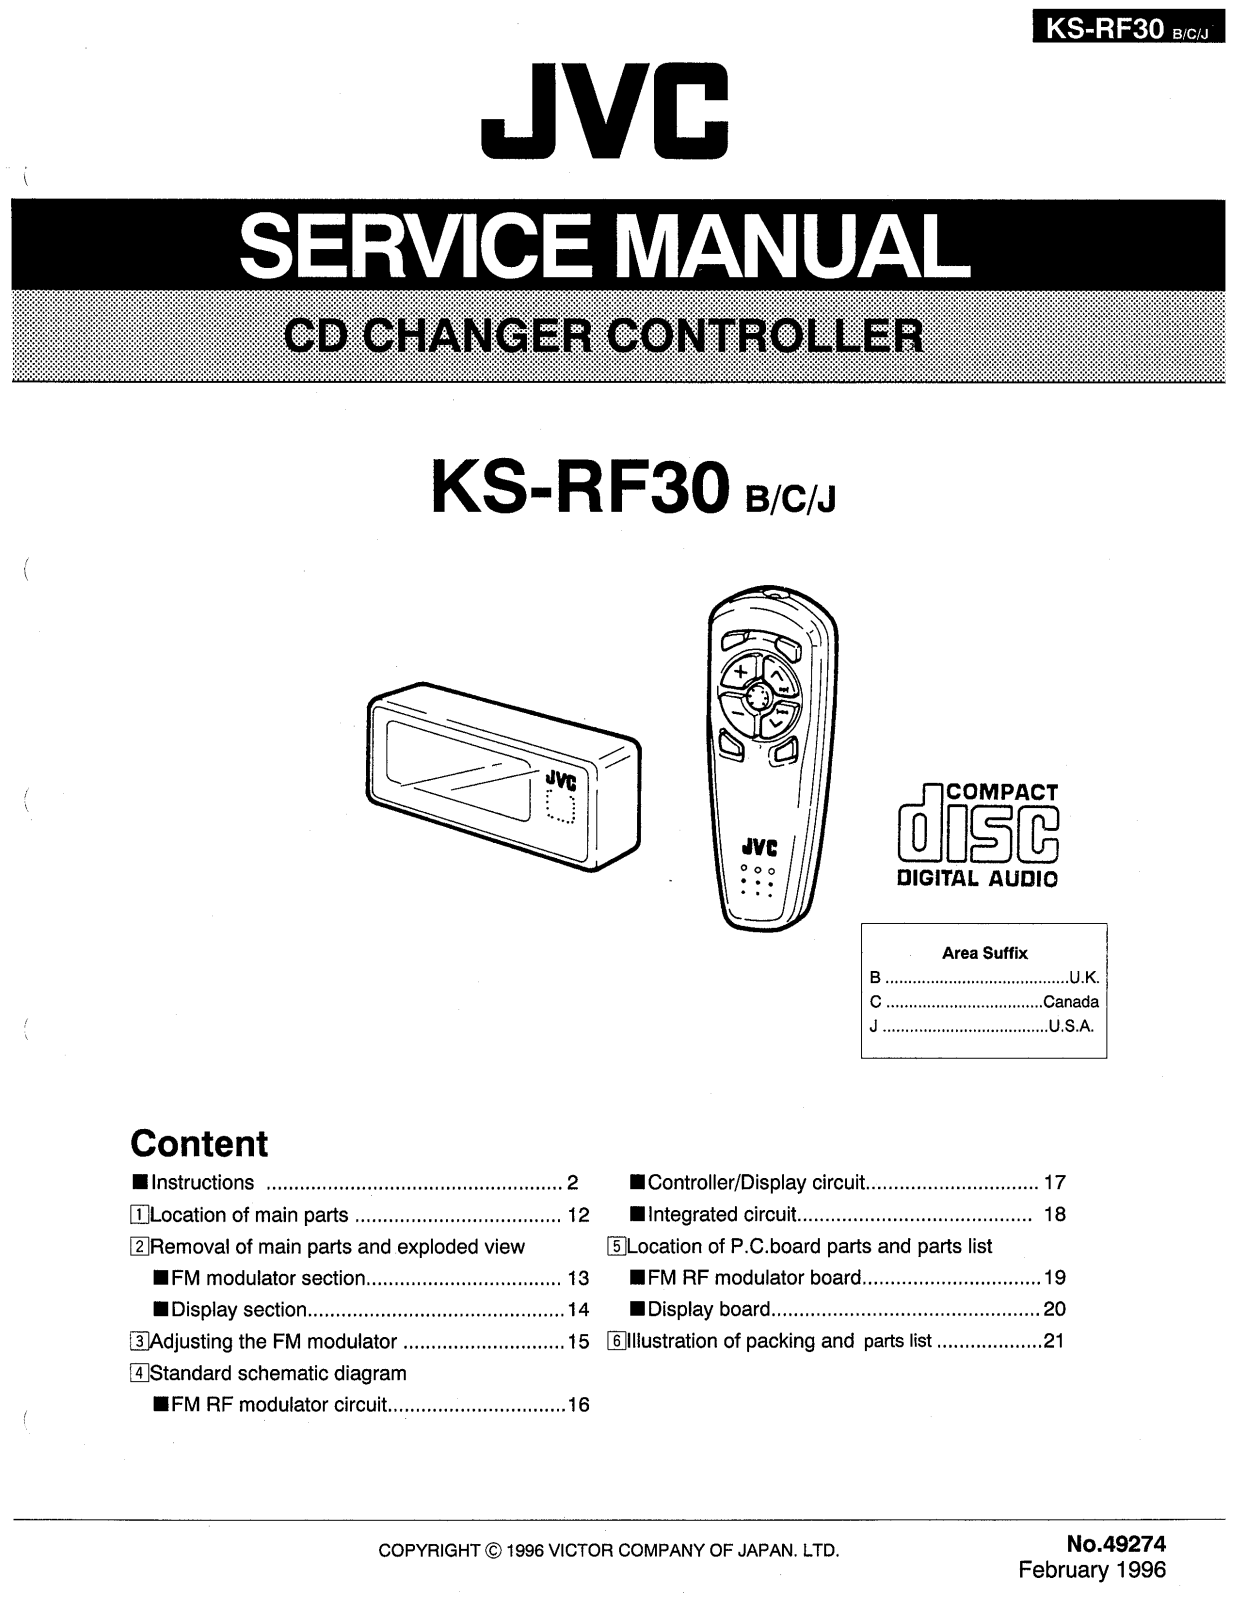 JVC KS-RF30, KS-RF30B, KS-RF30C, KS-RF30J Service Manual